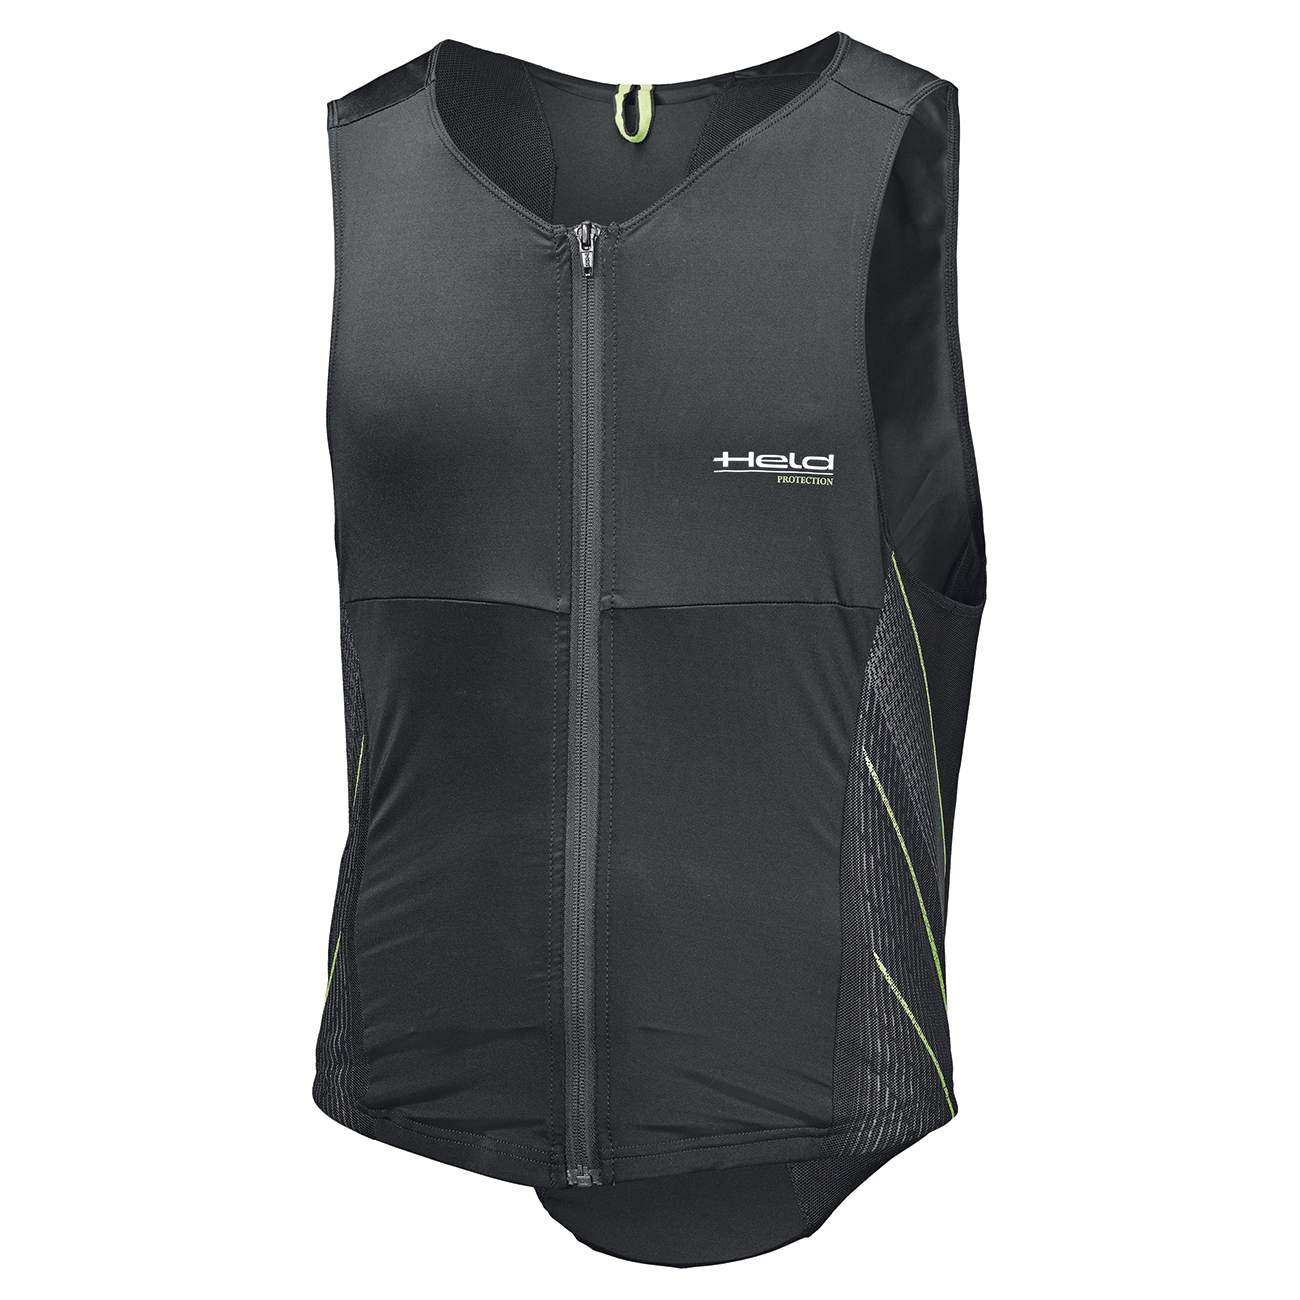 Image of Held Nagato Black Green Protection Vest Size XL EN